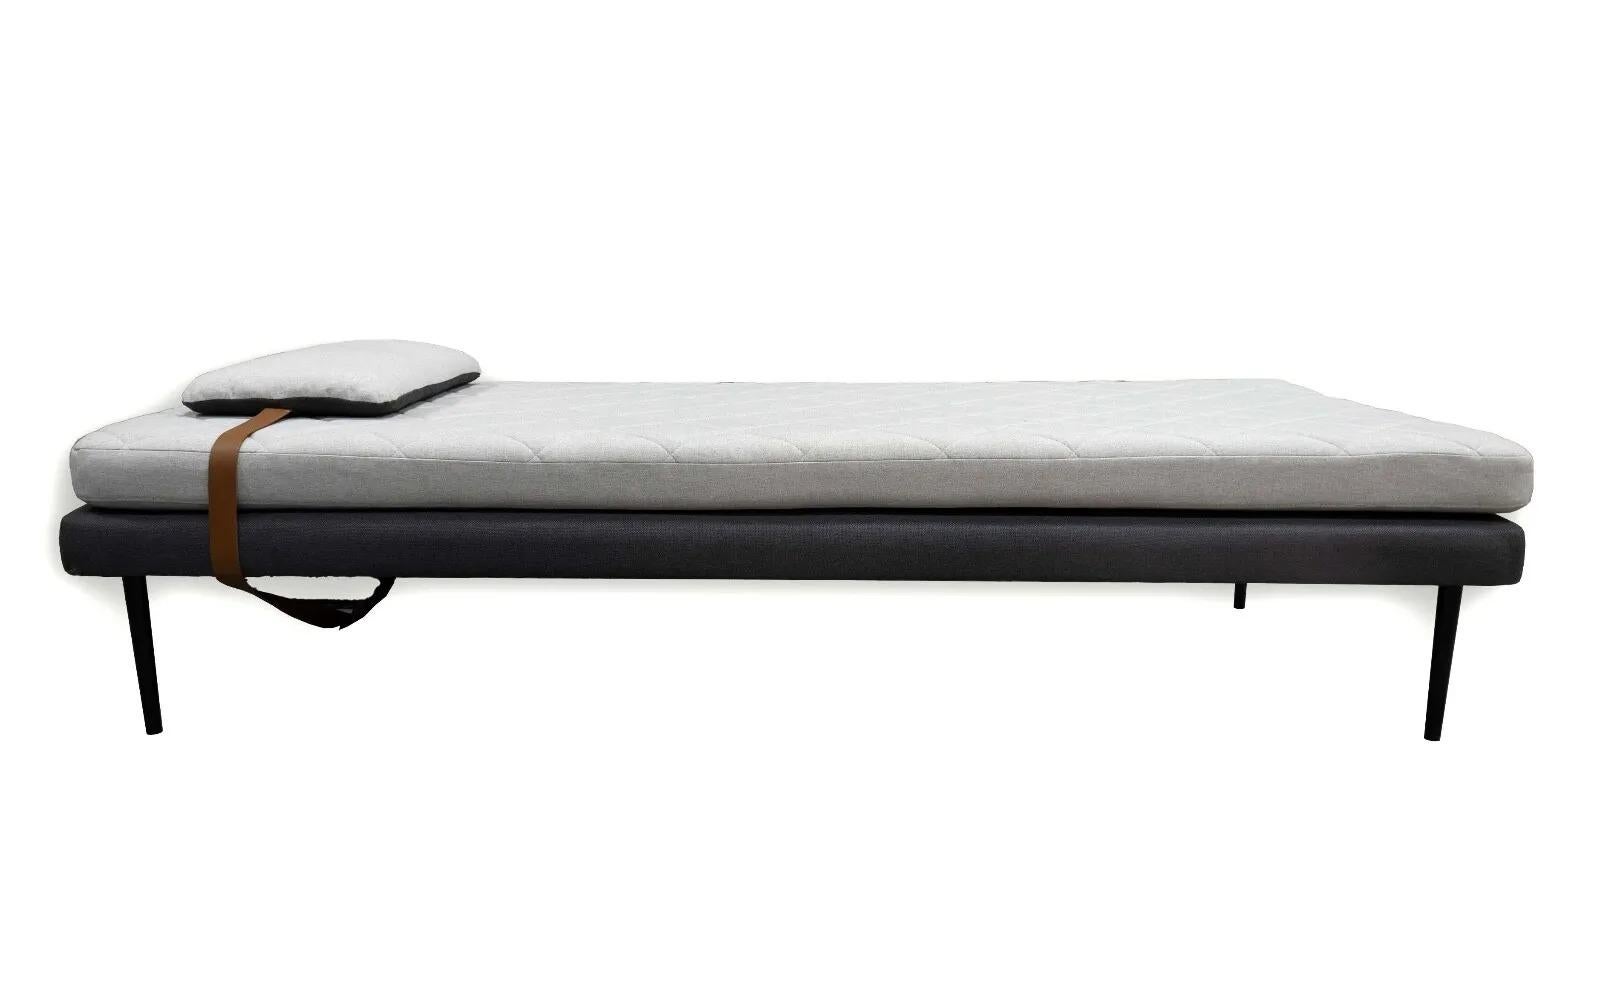 Ce lit de jour contemporain moderne gris clair affiche un design épuré, mêlant fonctionnalité et esthétique minimaliste. Le revêtement neutre gris clair est élégamment rehaussé par un motif cousu en losange, qui ajoute une texture subtile et de la